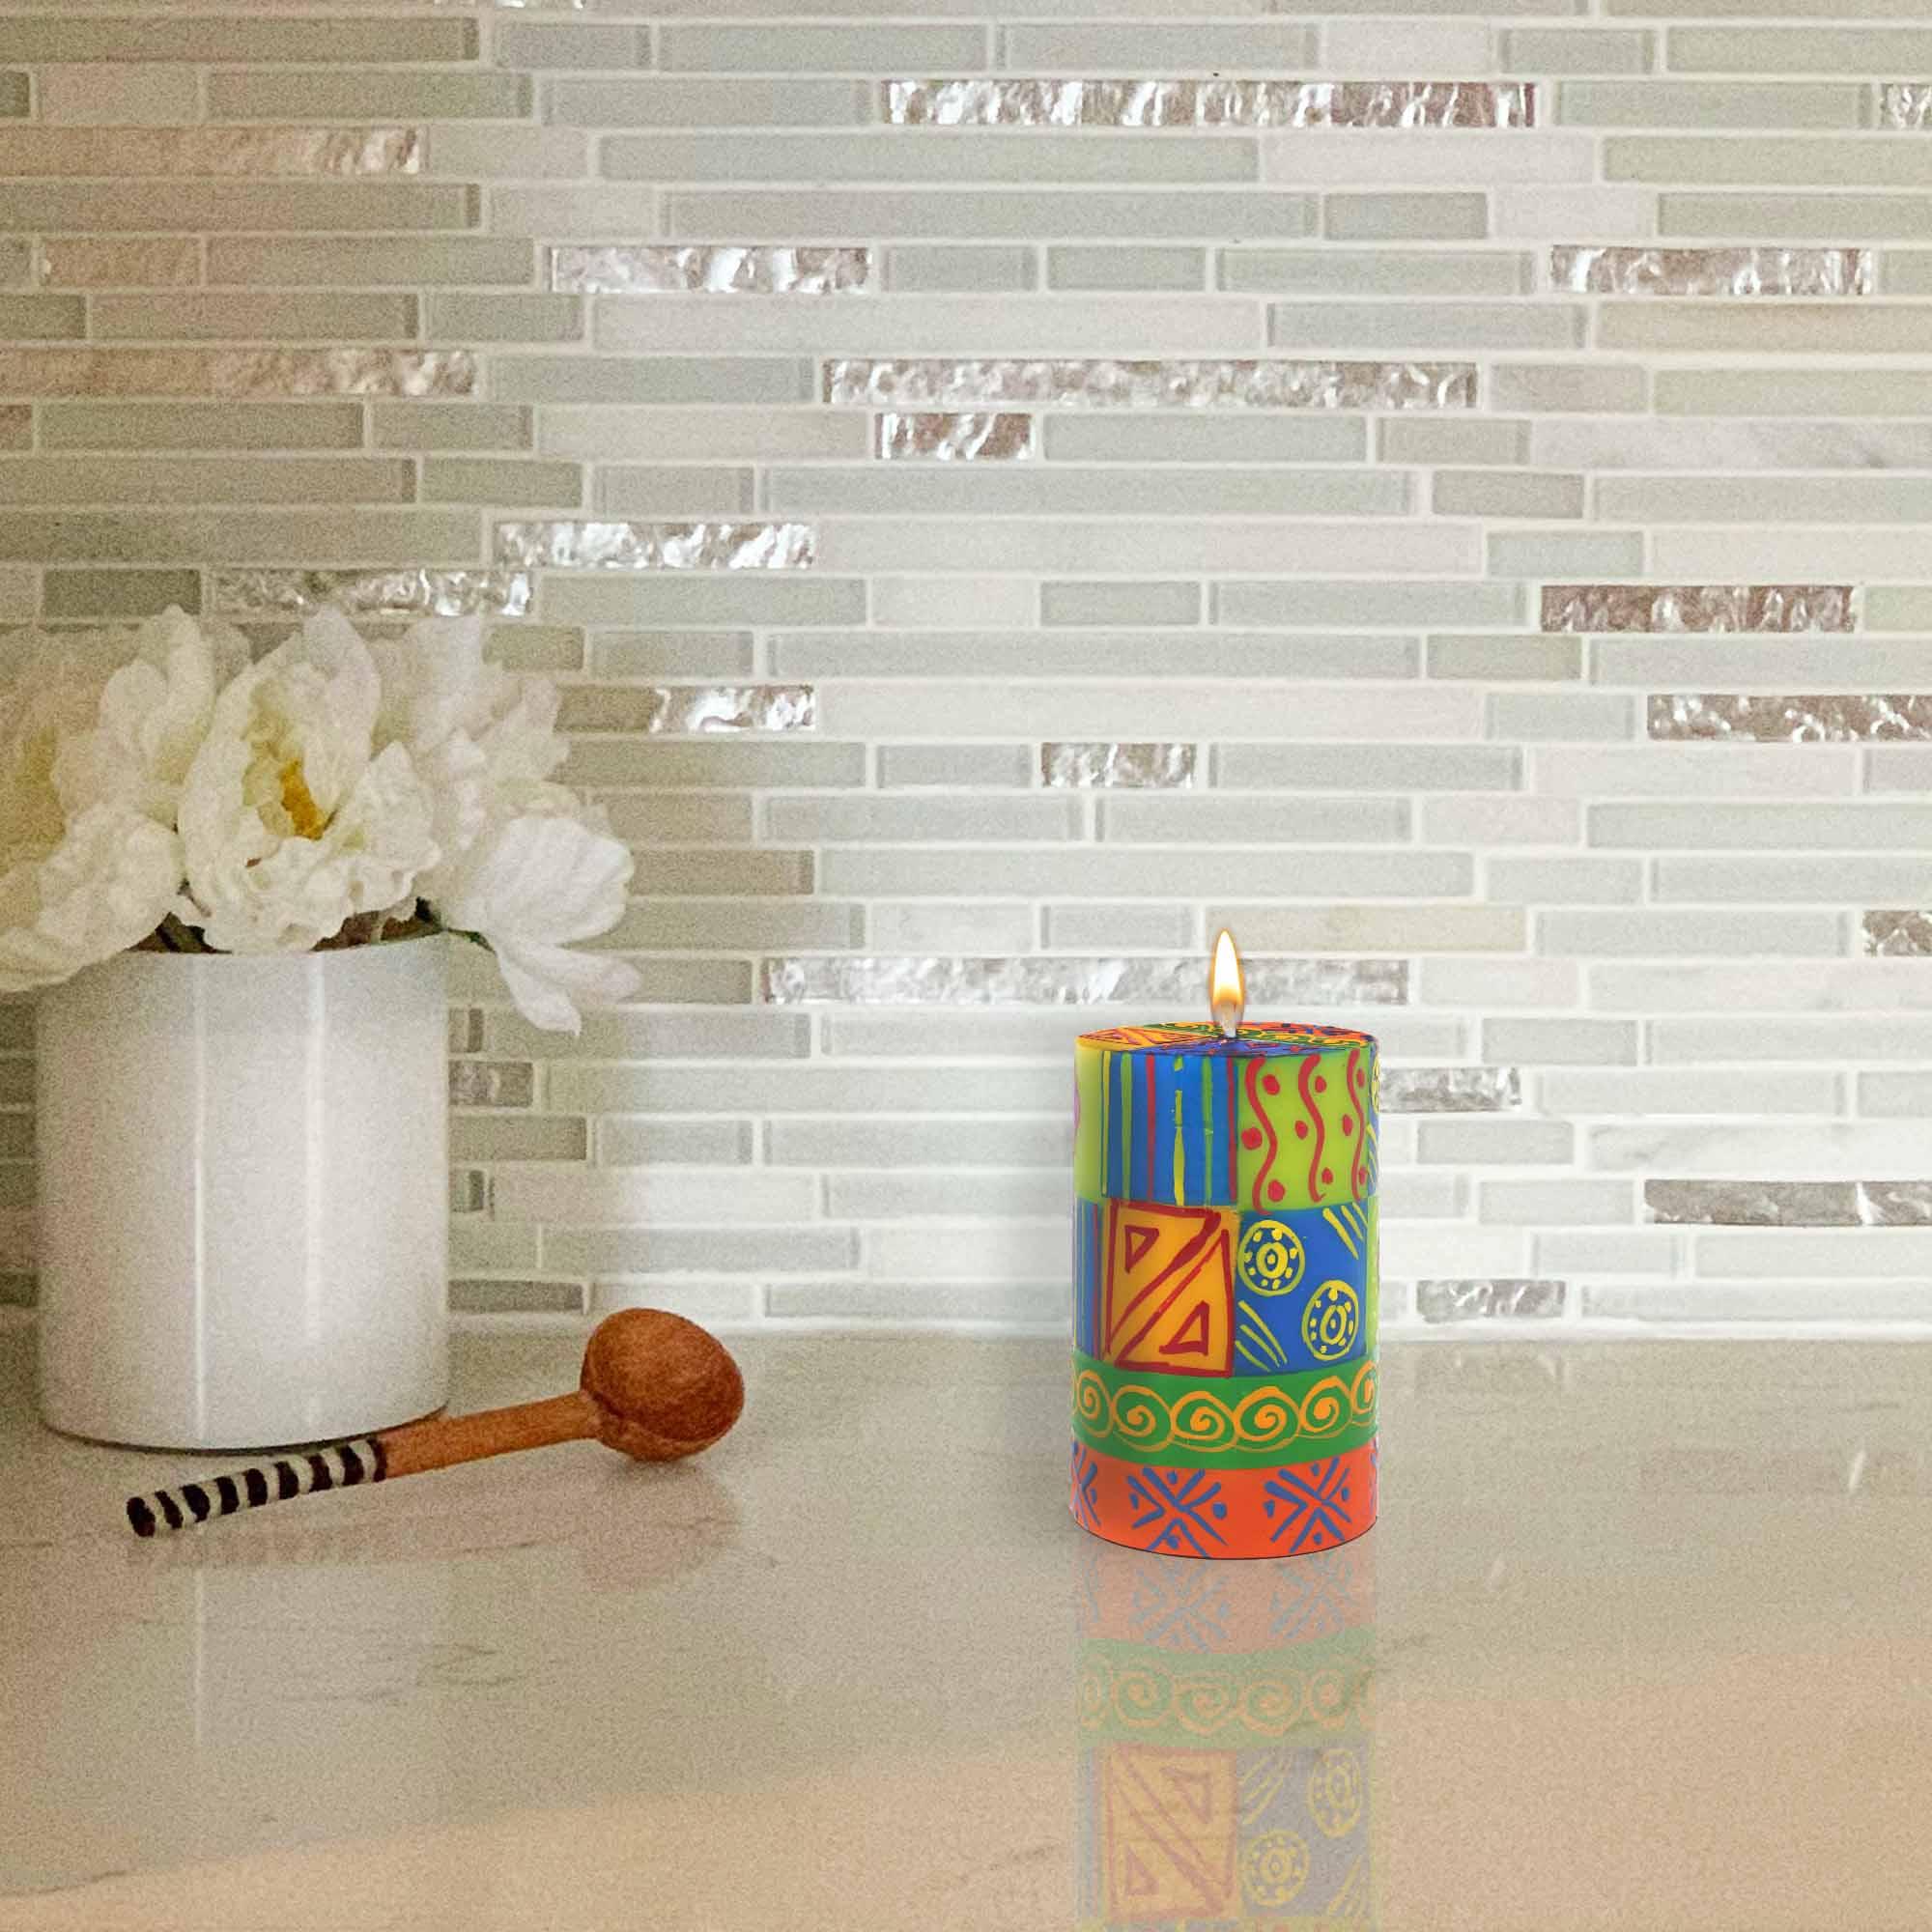 Single Boxed Hand-Painted Pillar Candle - Shahida Design - Nobunto - Flyclothing LLC